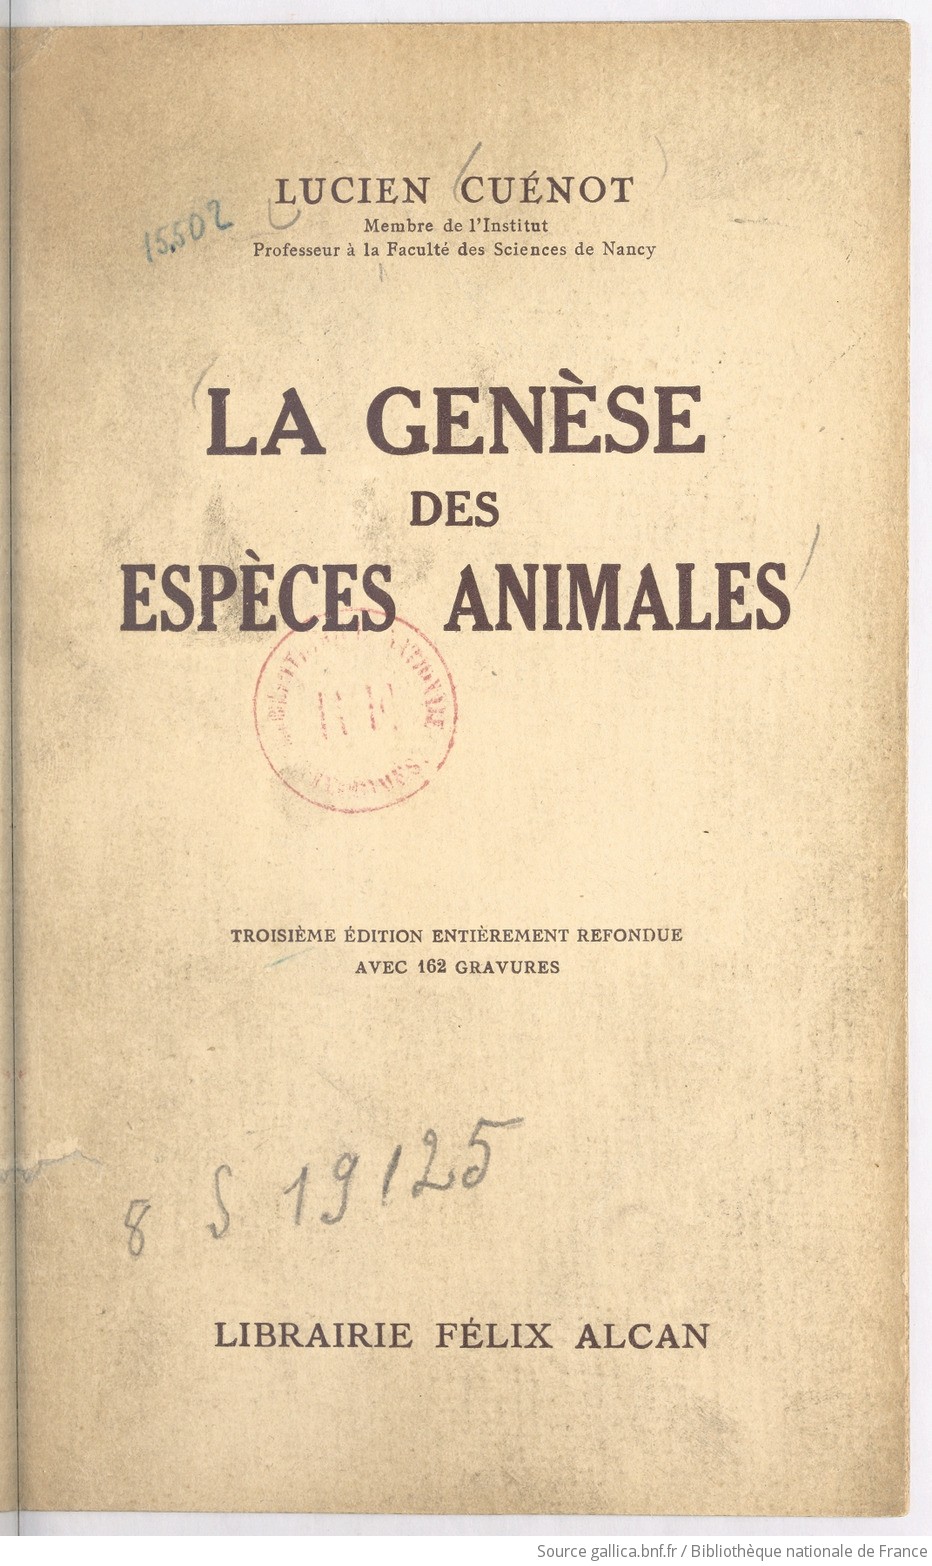 La genèse des espèces animales (3e édition entièrement refondue) / par L. Cuénot,...